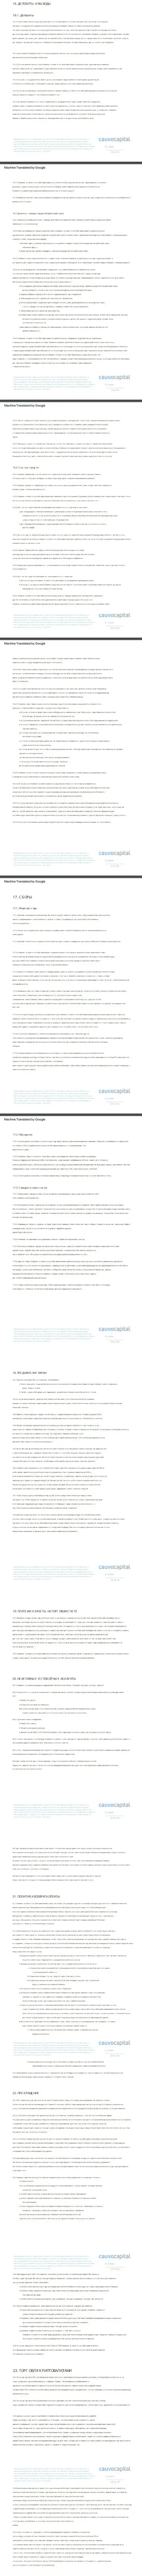 Часть третья пользовательского соглашения форекс-дилинговой компании КаувоКапитал